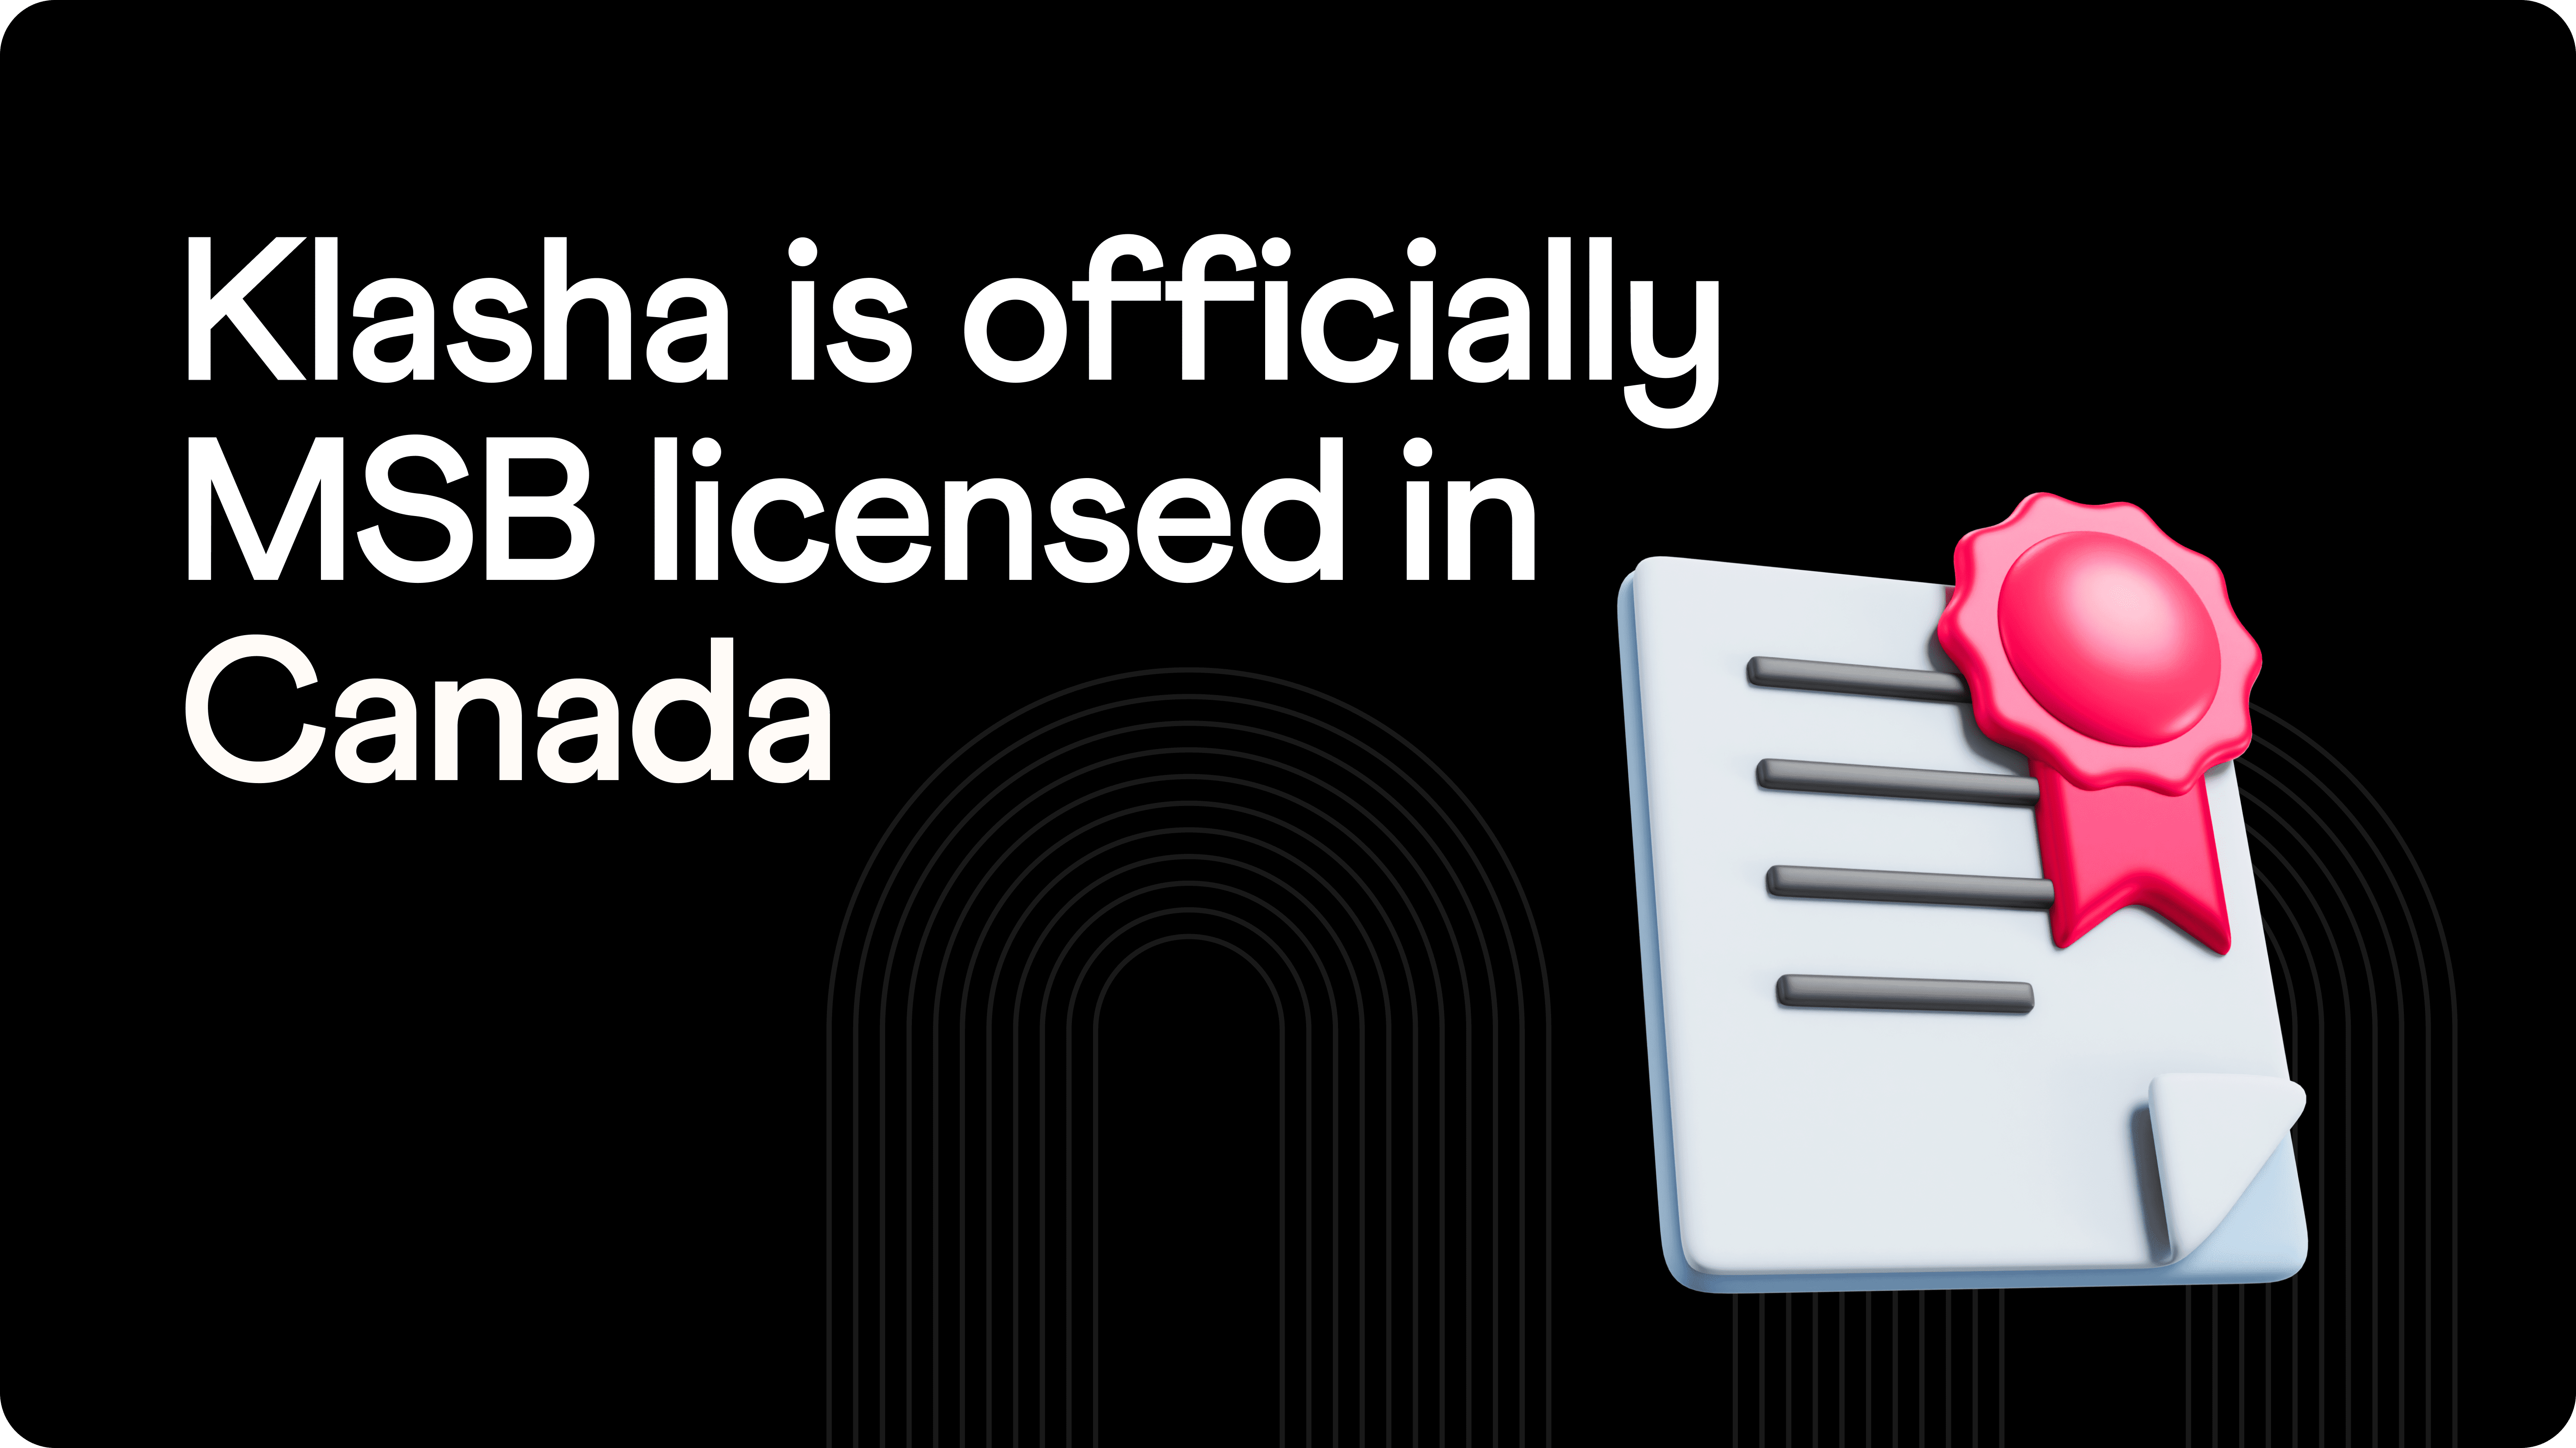 Klasha acquires MSB license to operate in Canada